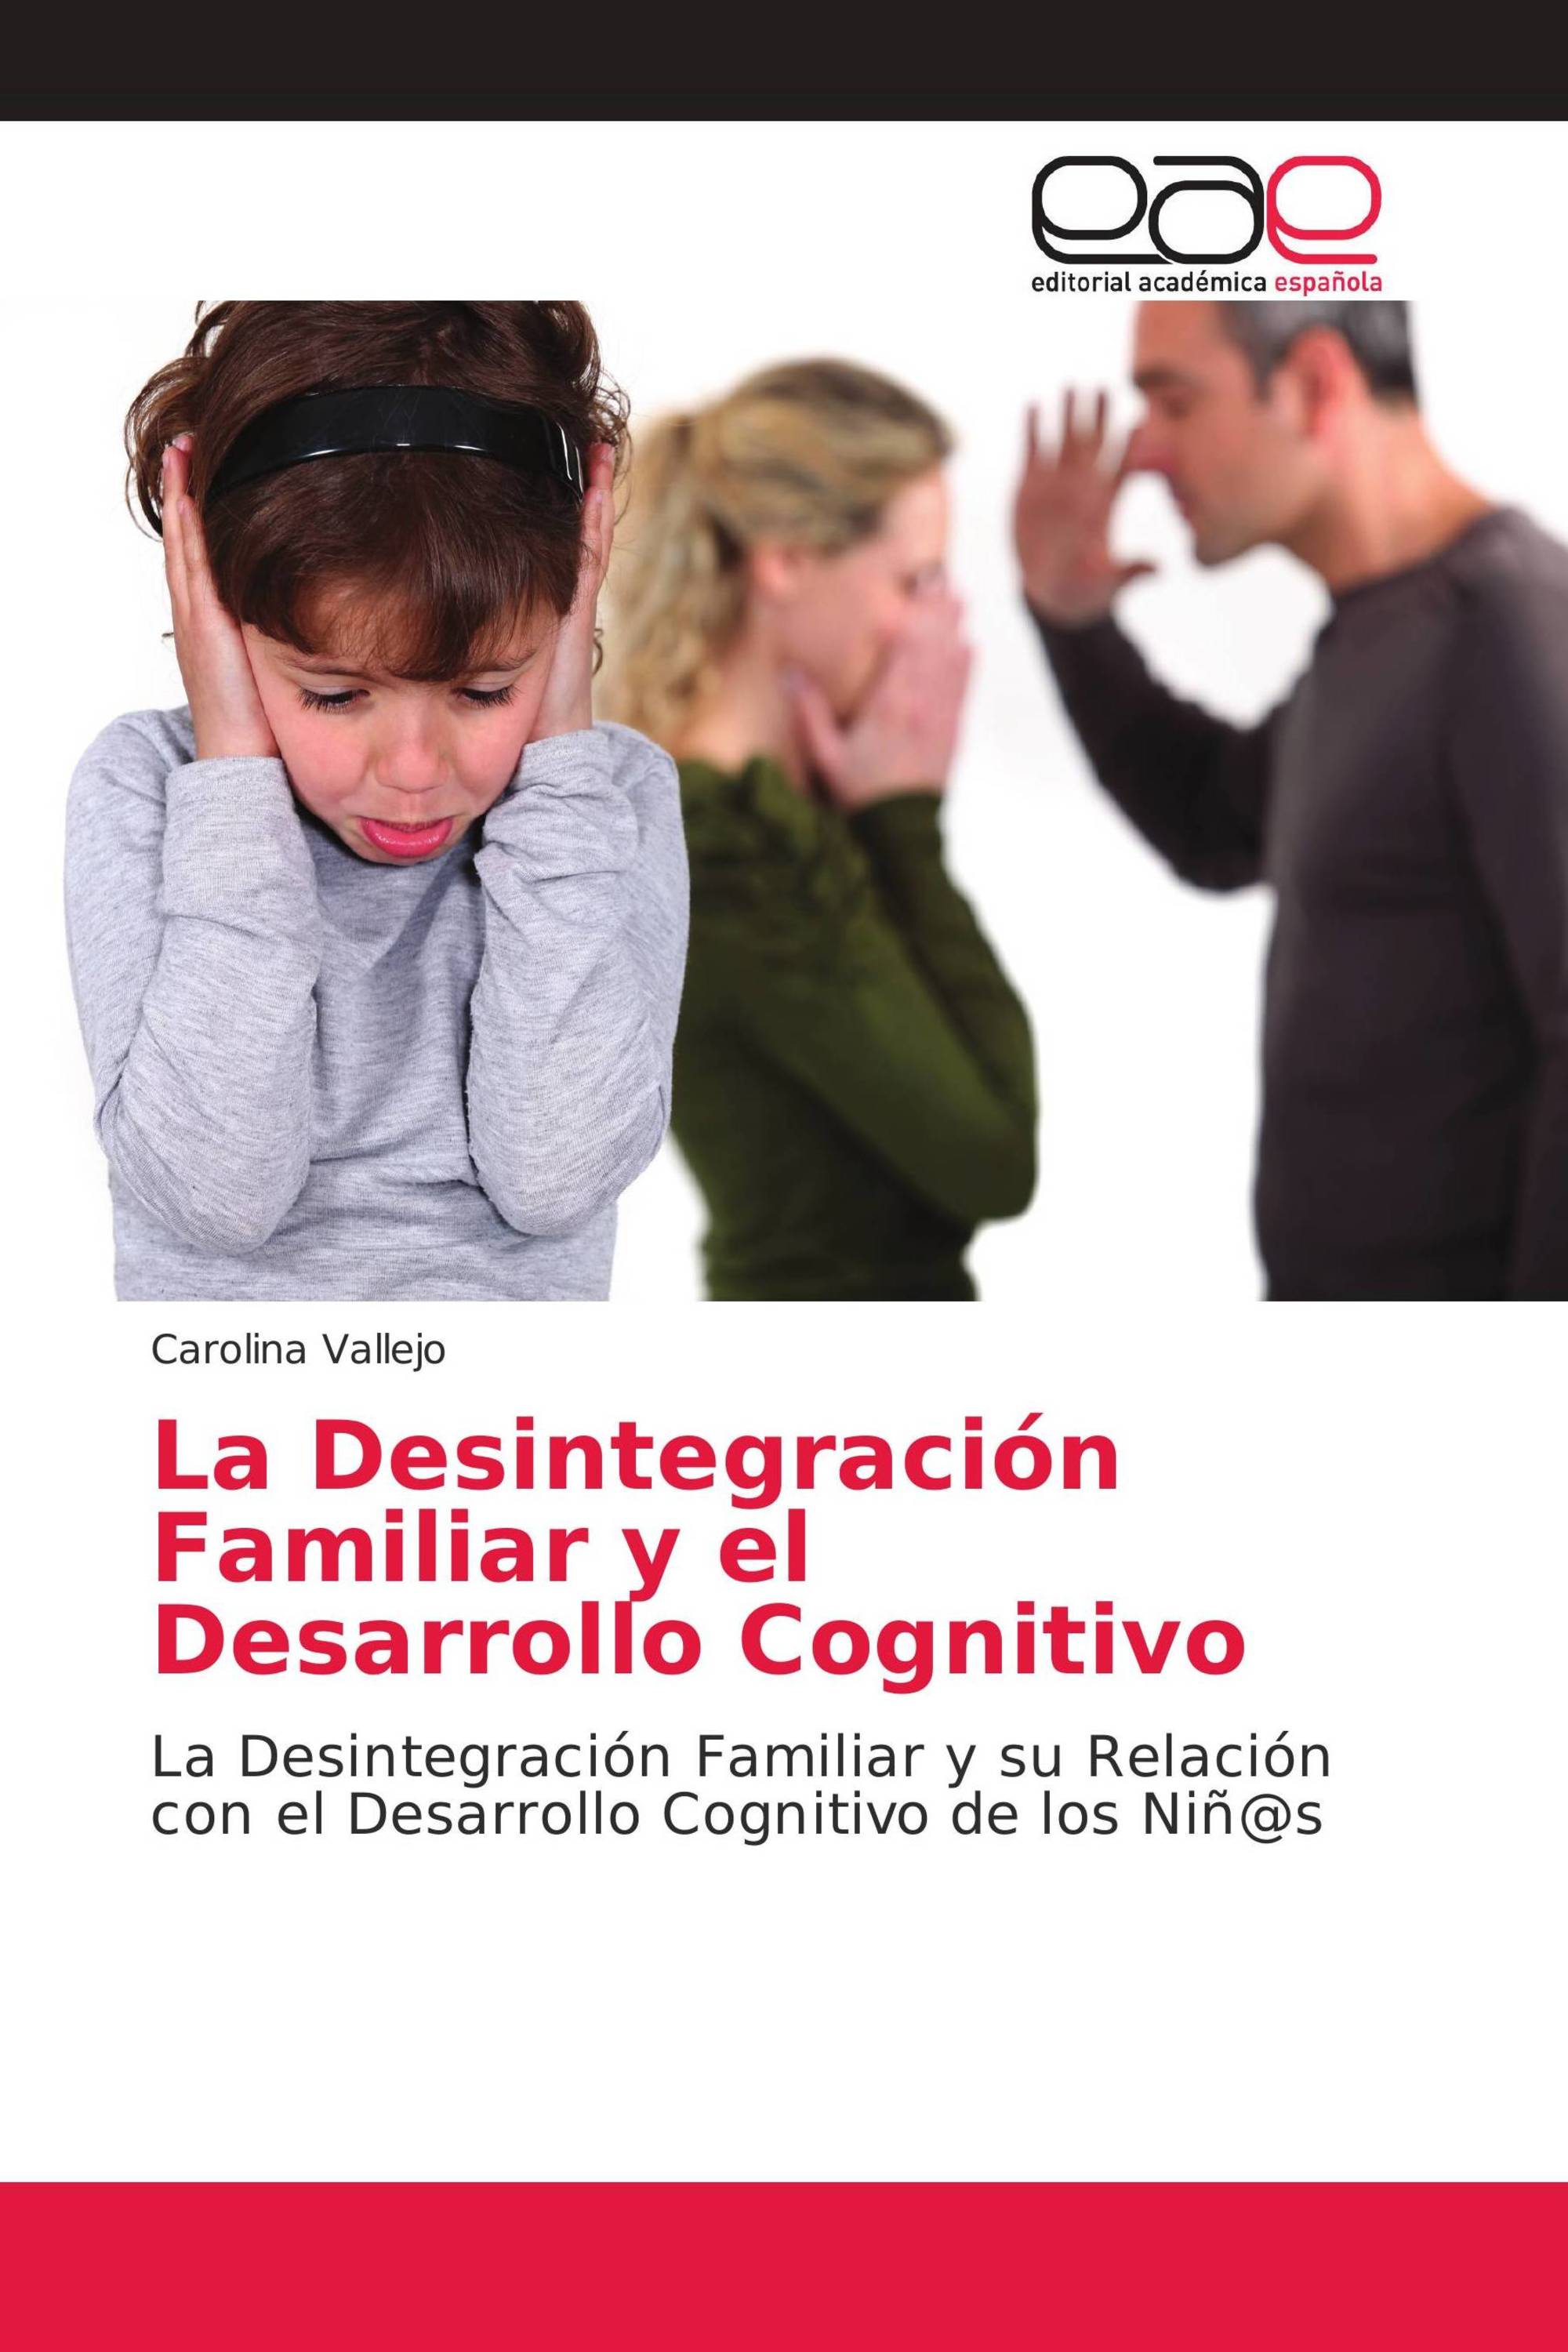 La Desintegración Familiar y el Desarrollo Cognitivo